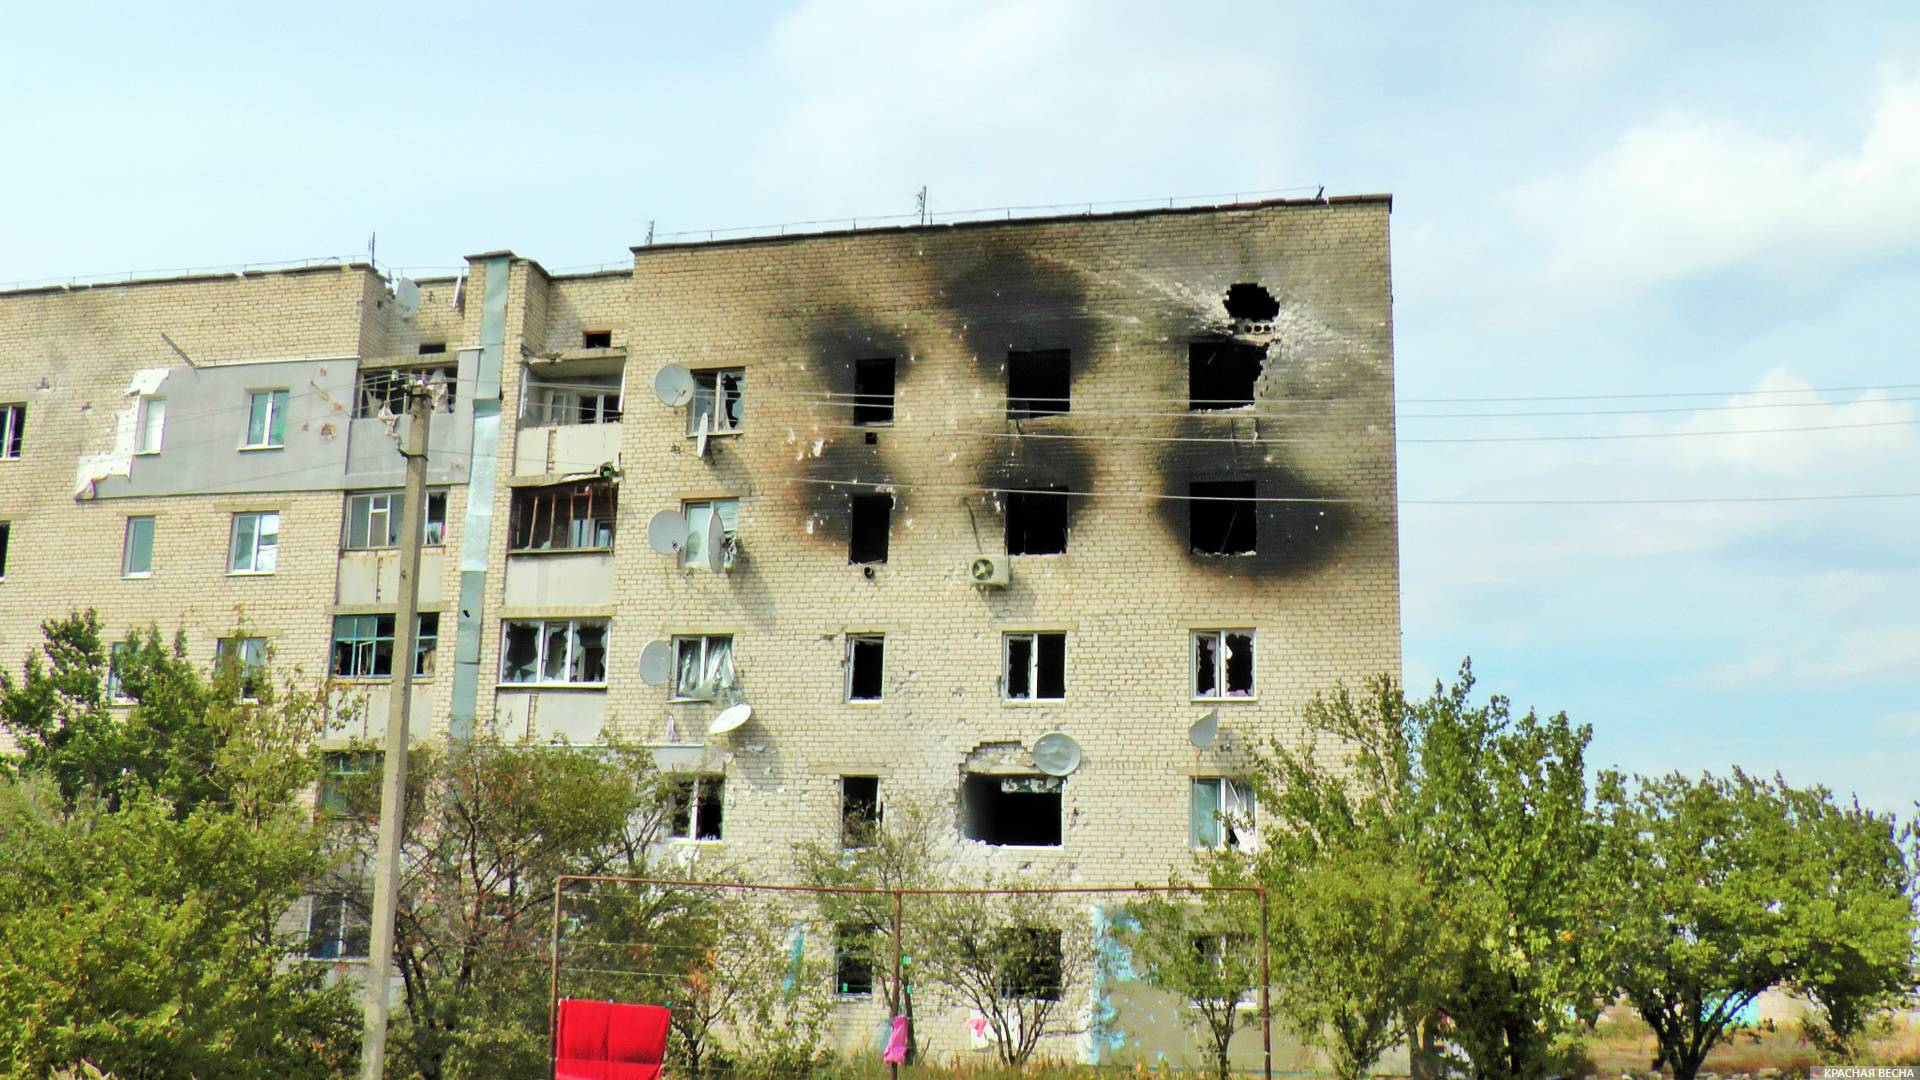 Многоквартирный дом в Новосветловке после обстрела со стороны ВСУ. ЛНР